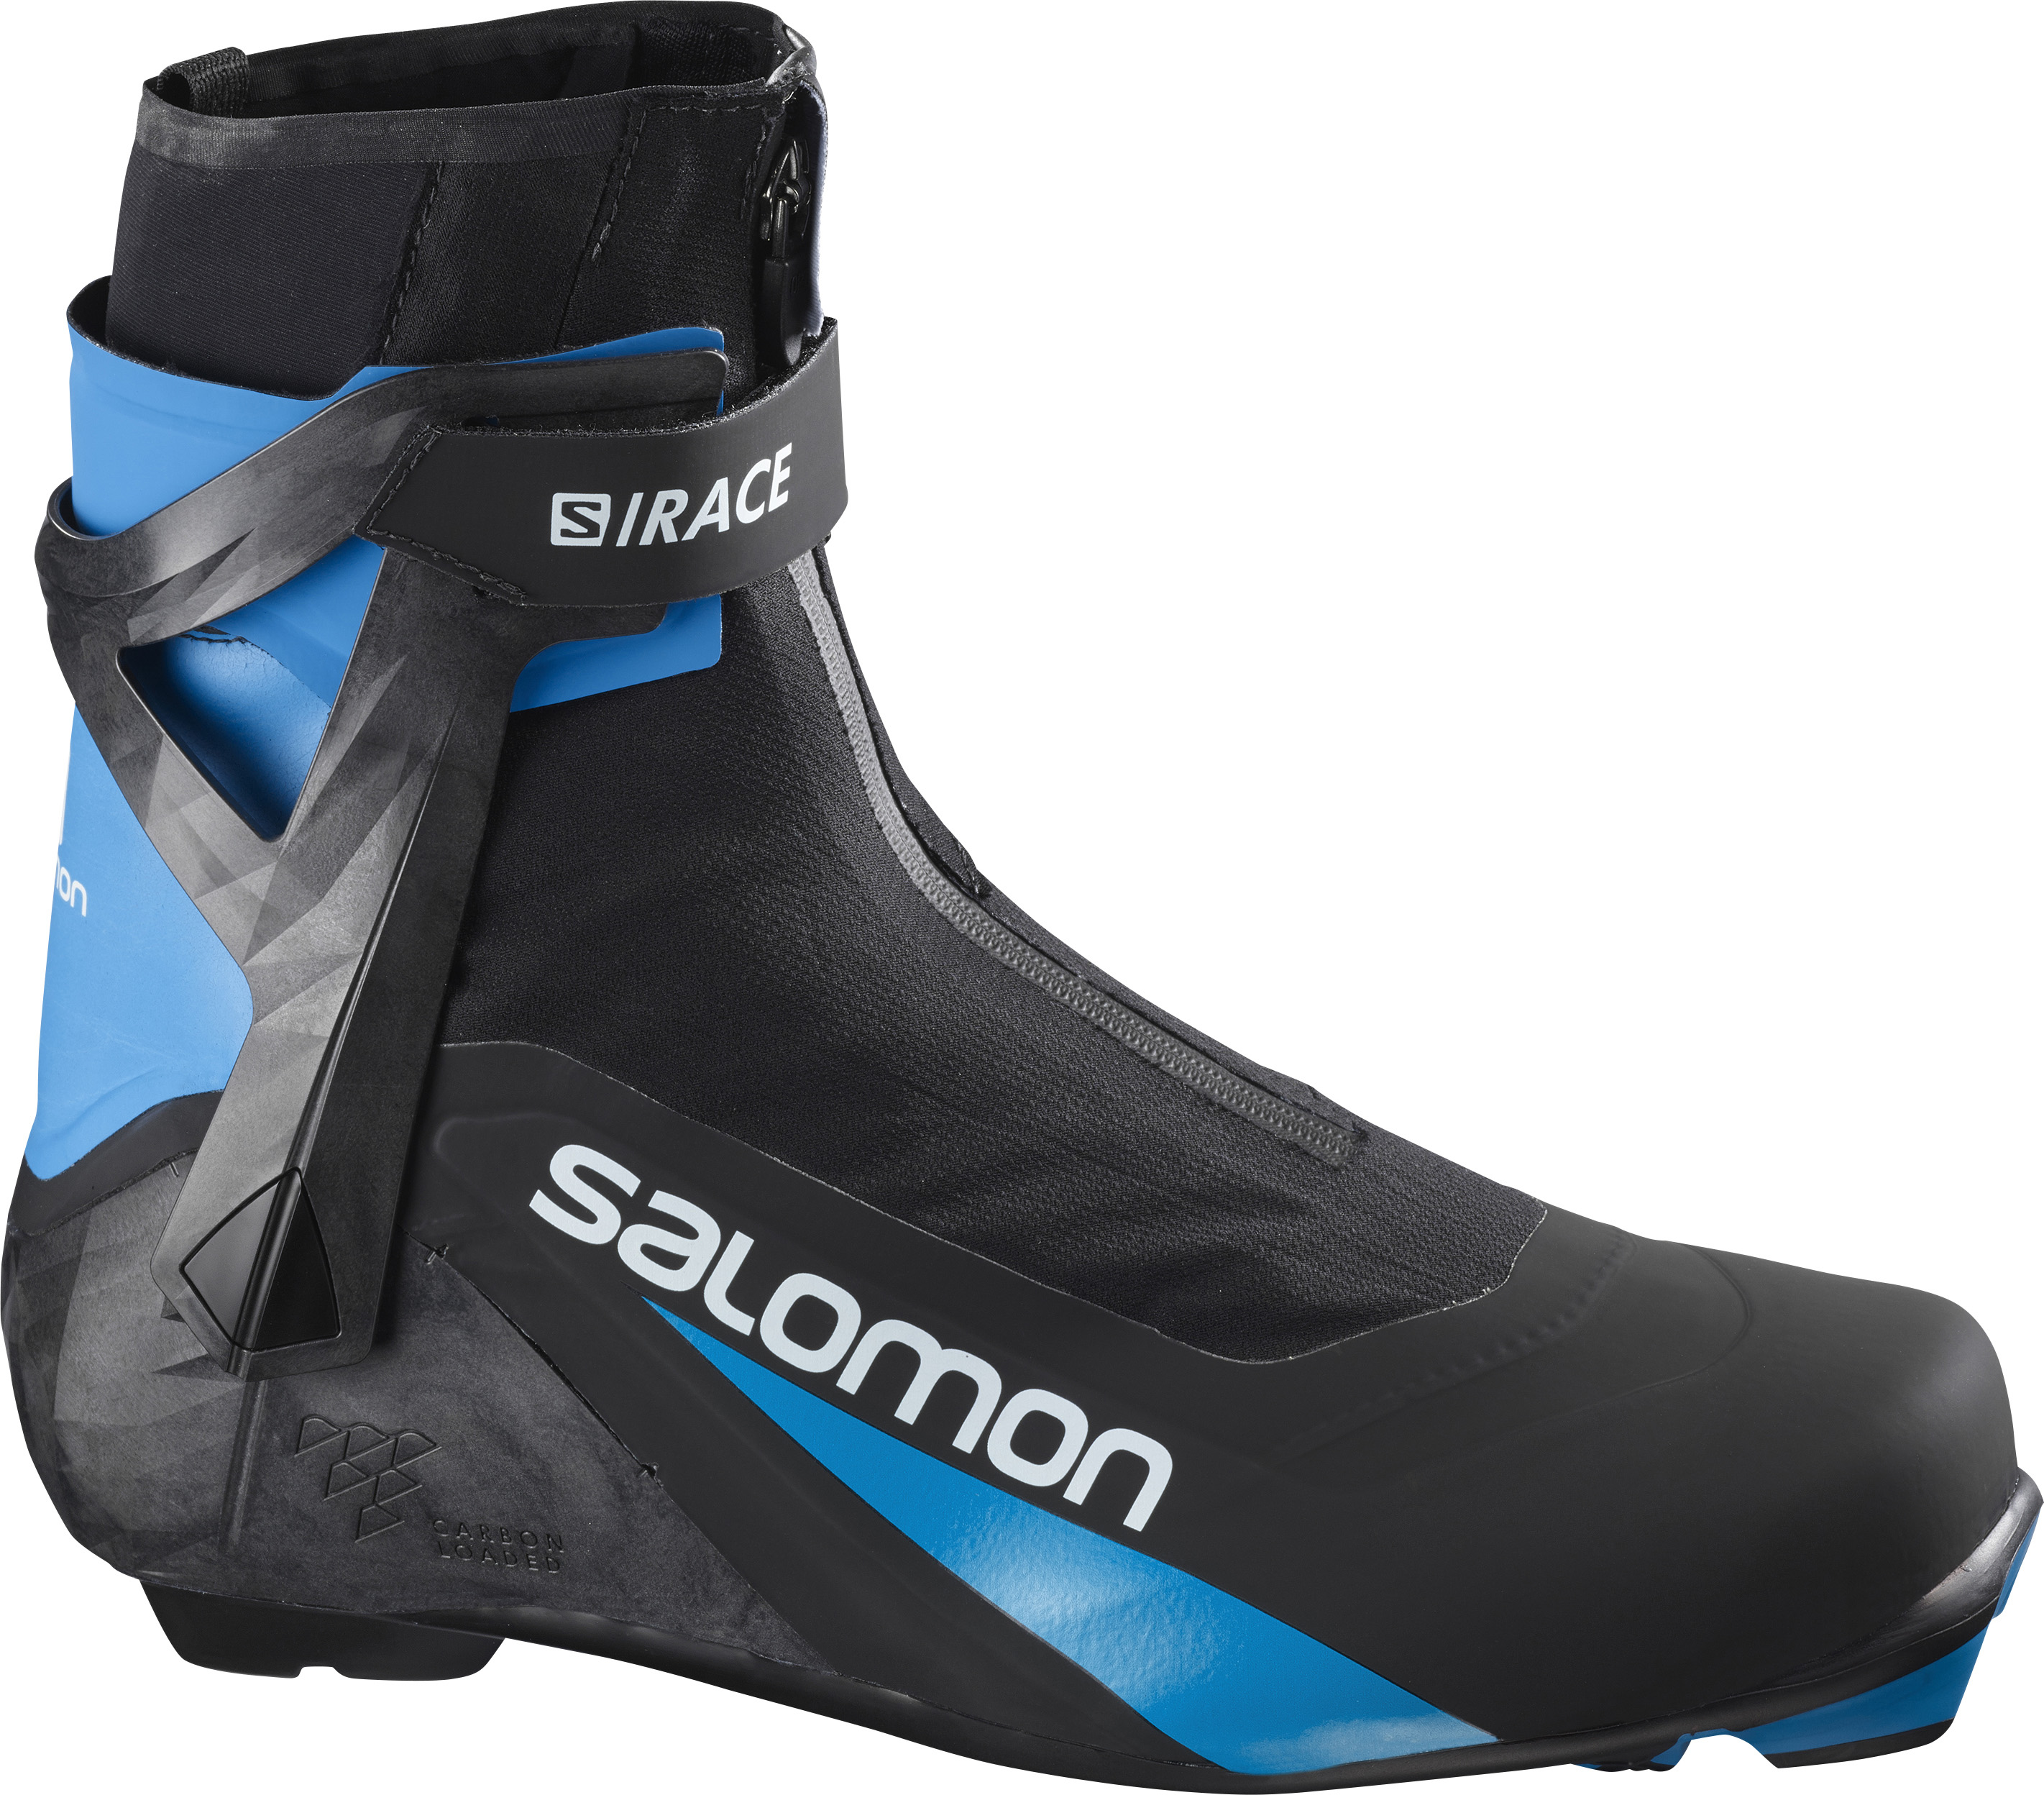 Salomon S/RACE Carbon Skate Prolink - Langlaufschuh